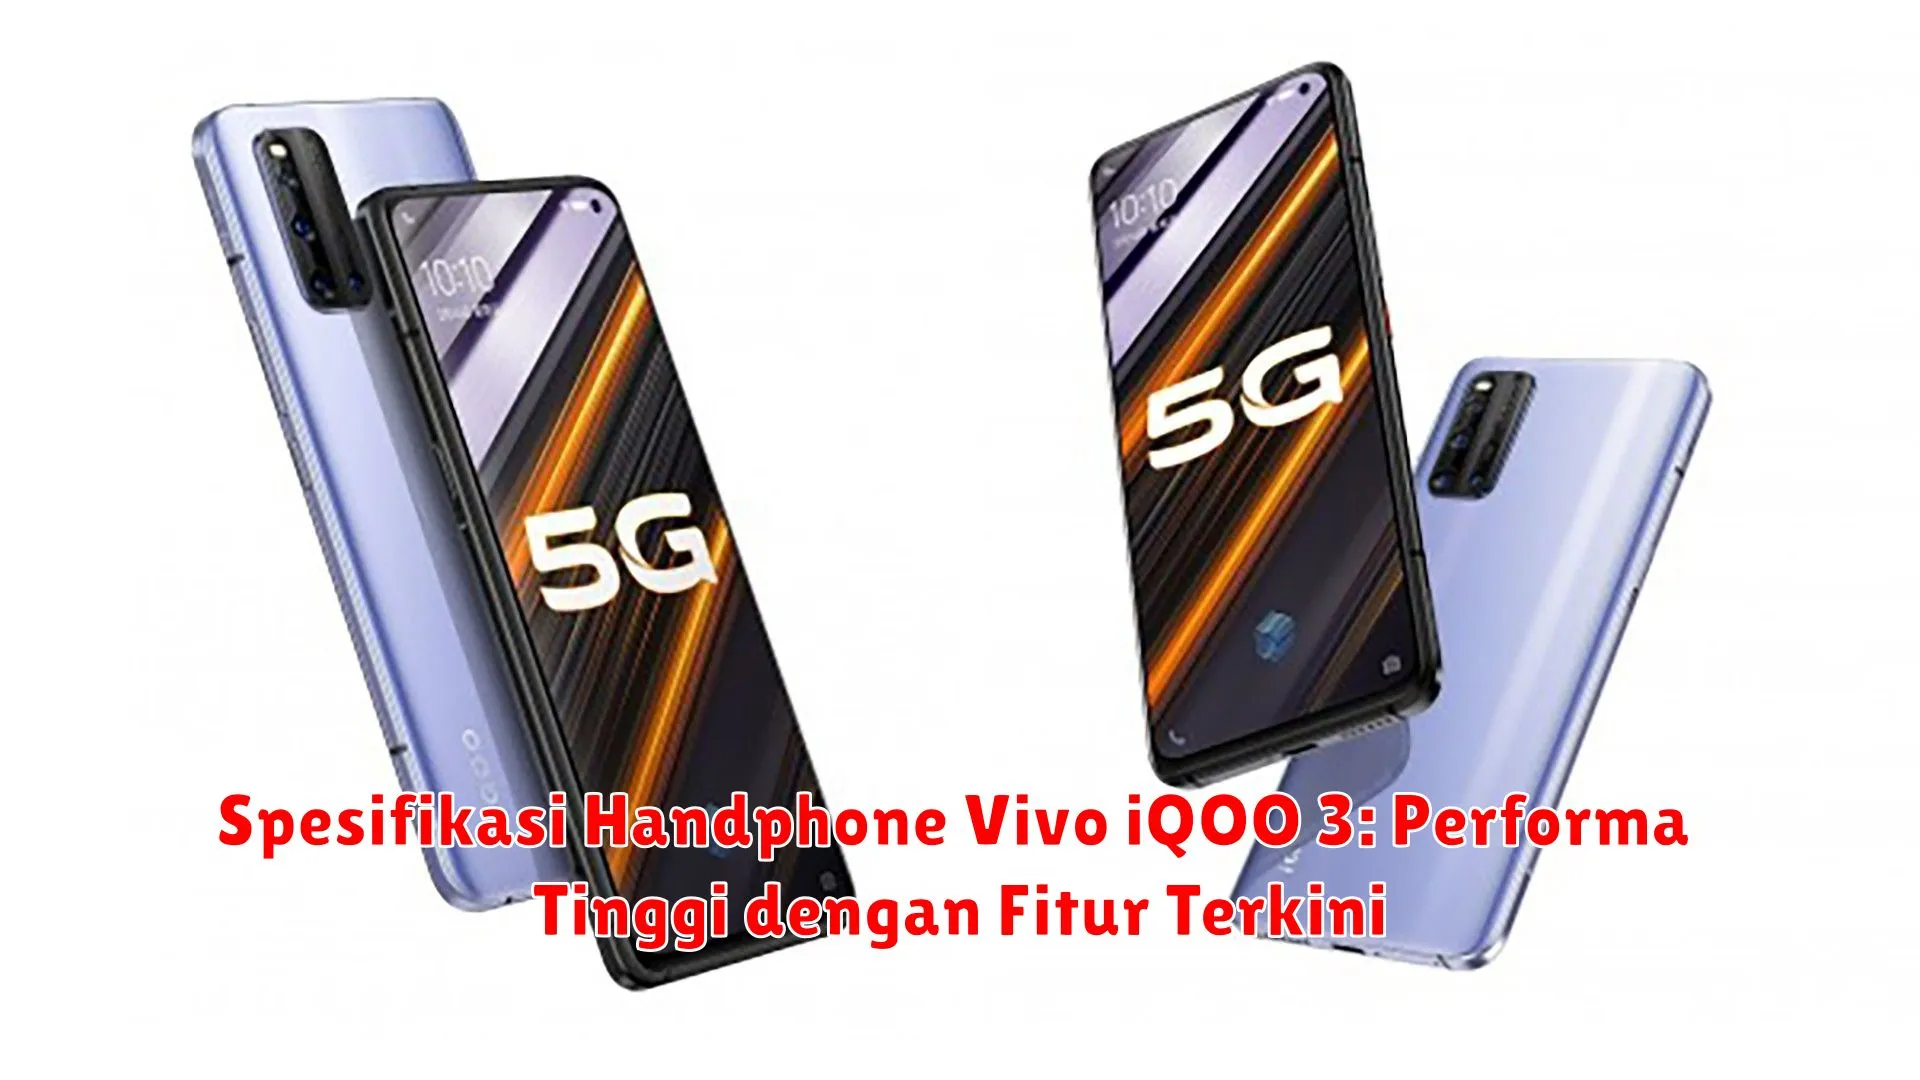 Spesifikasi Handphone Vivo iQOO 3: Performa Tinggi dengan Fitur Terkini